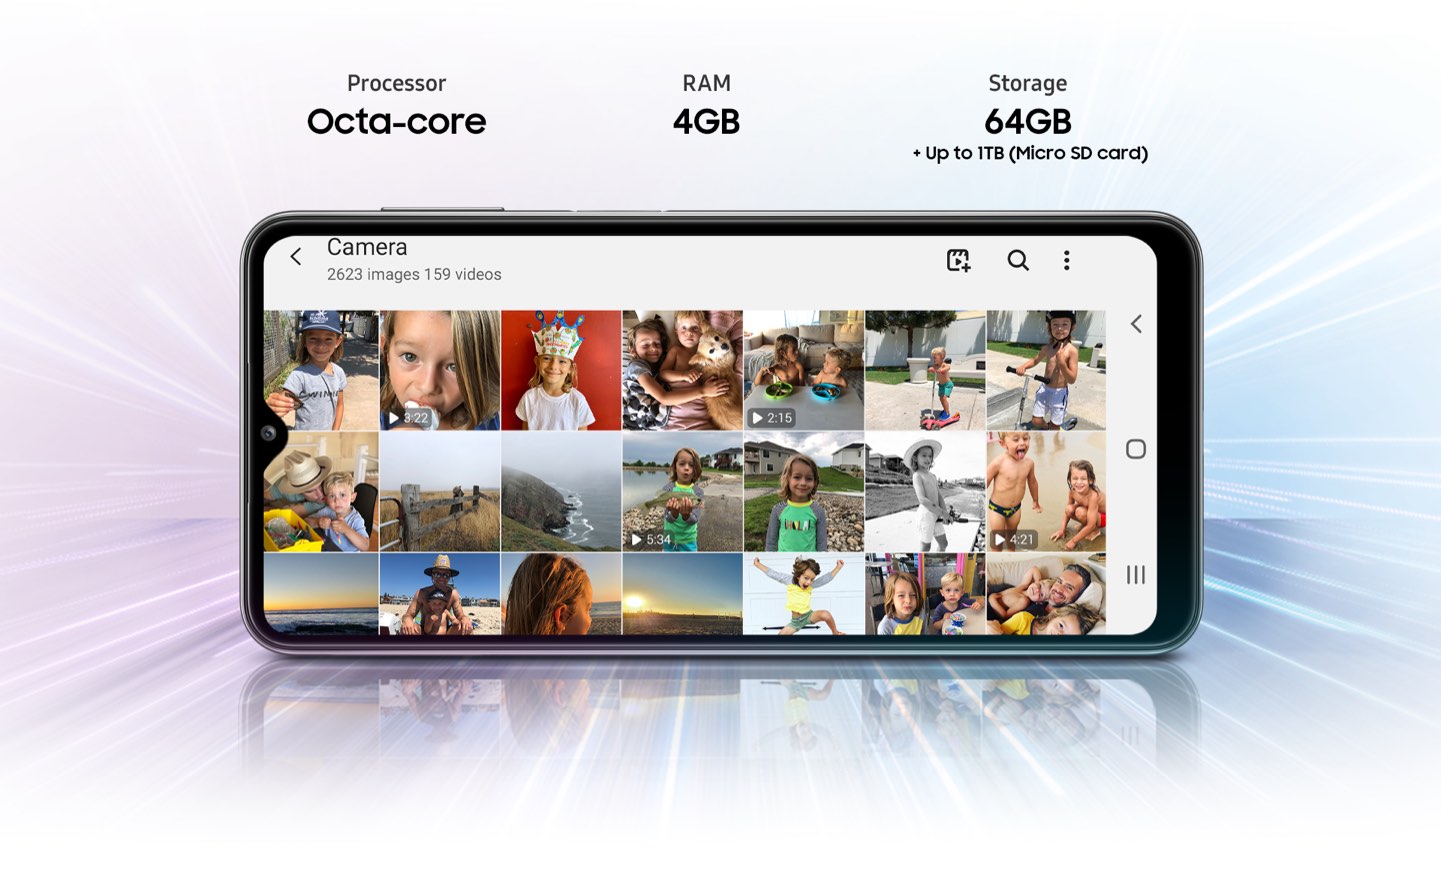 Samsung Galaxy A32 5G: precio y características del nuevo móvil 5G barato -  Meristation